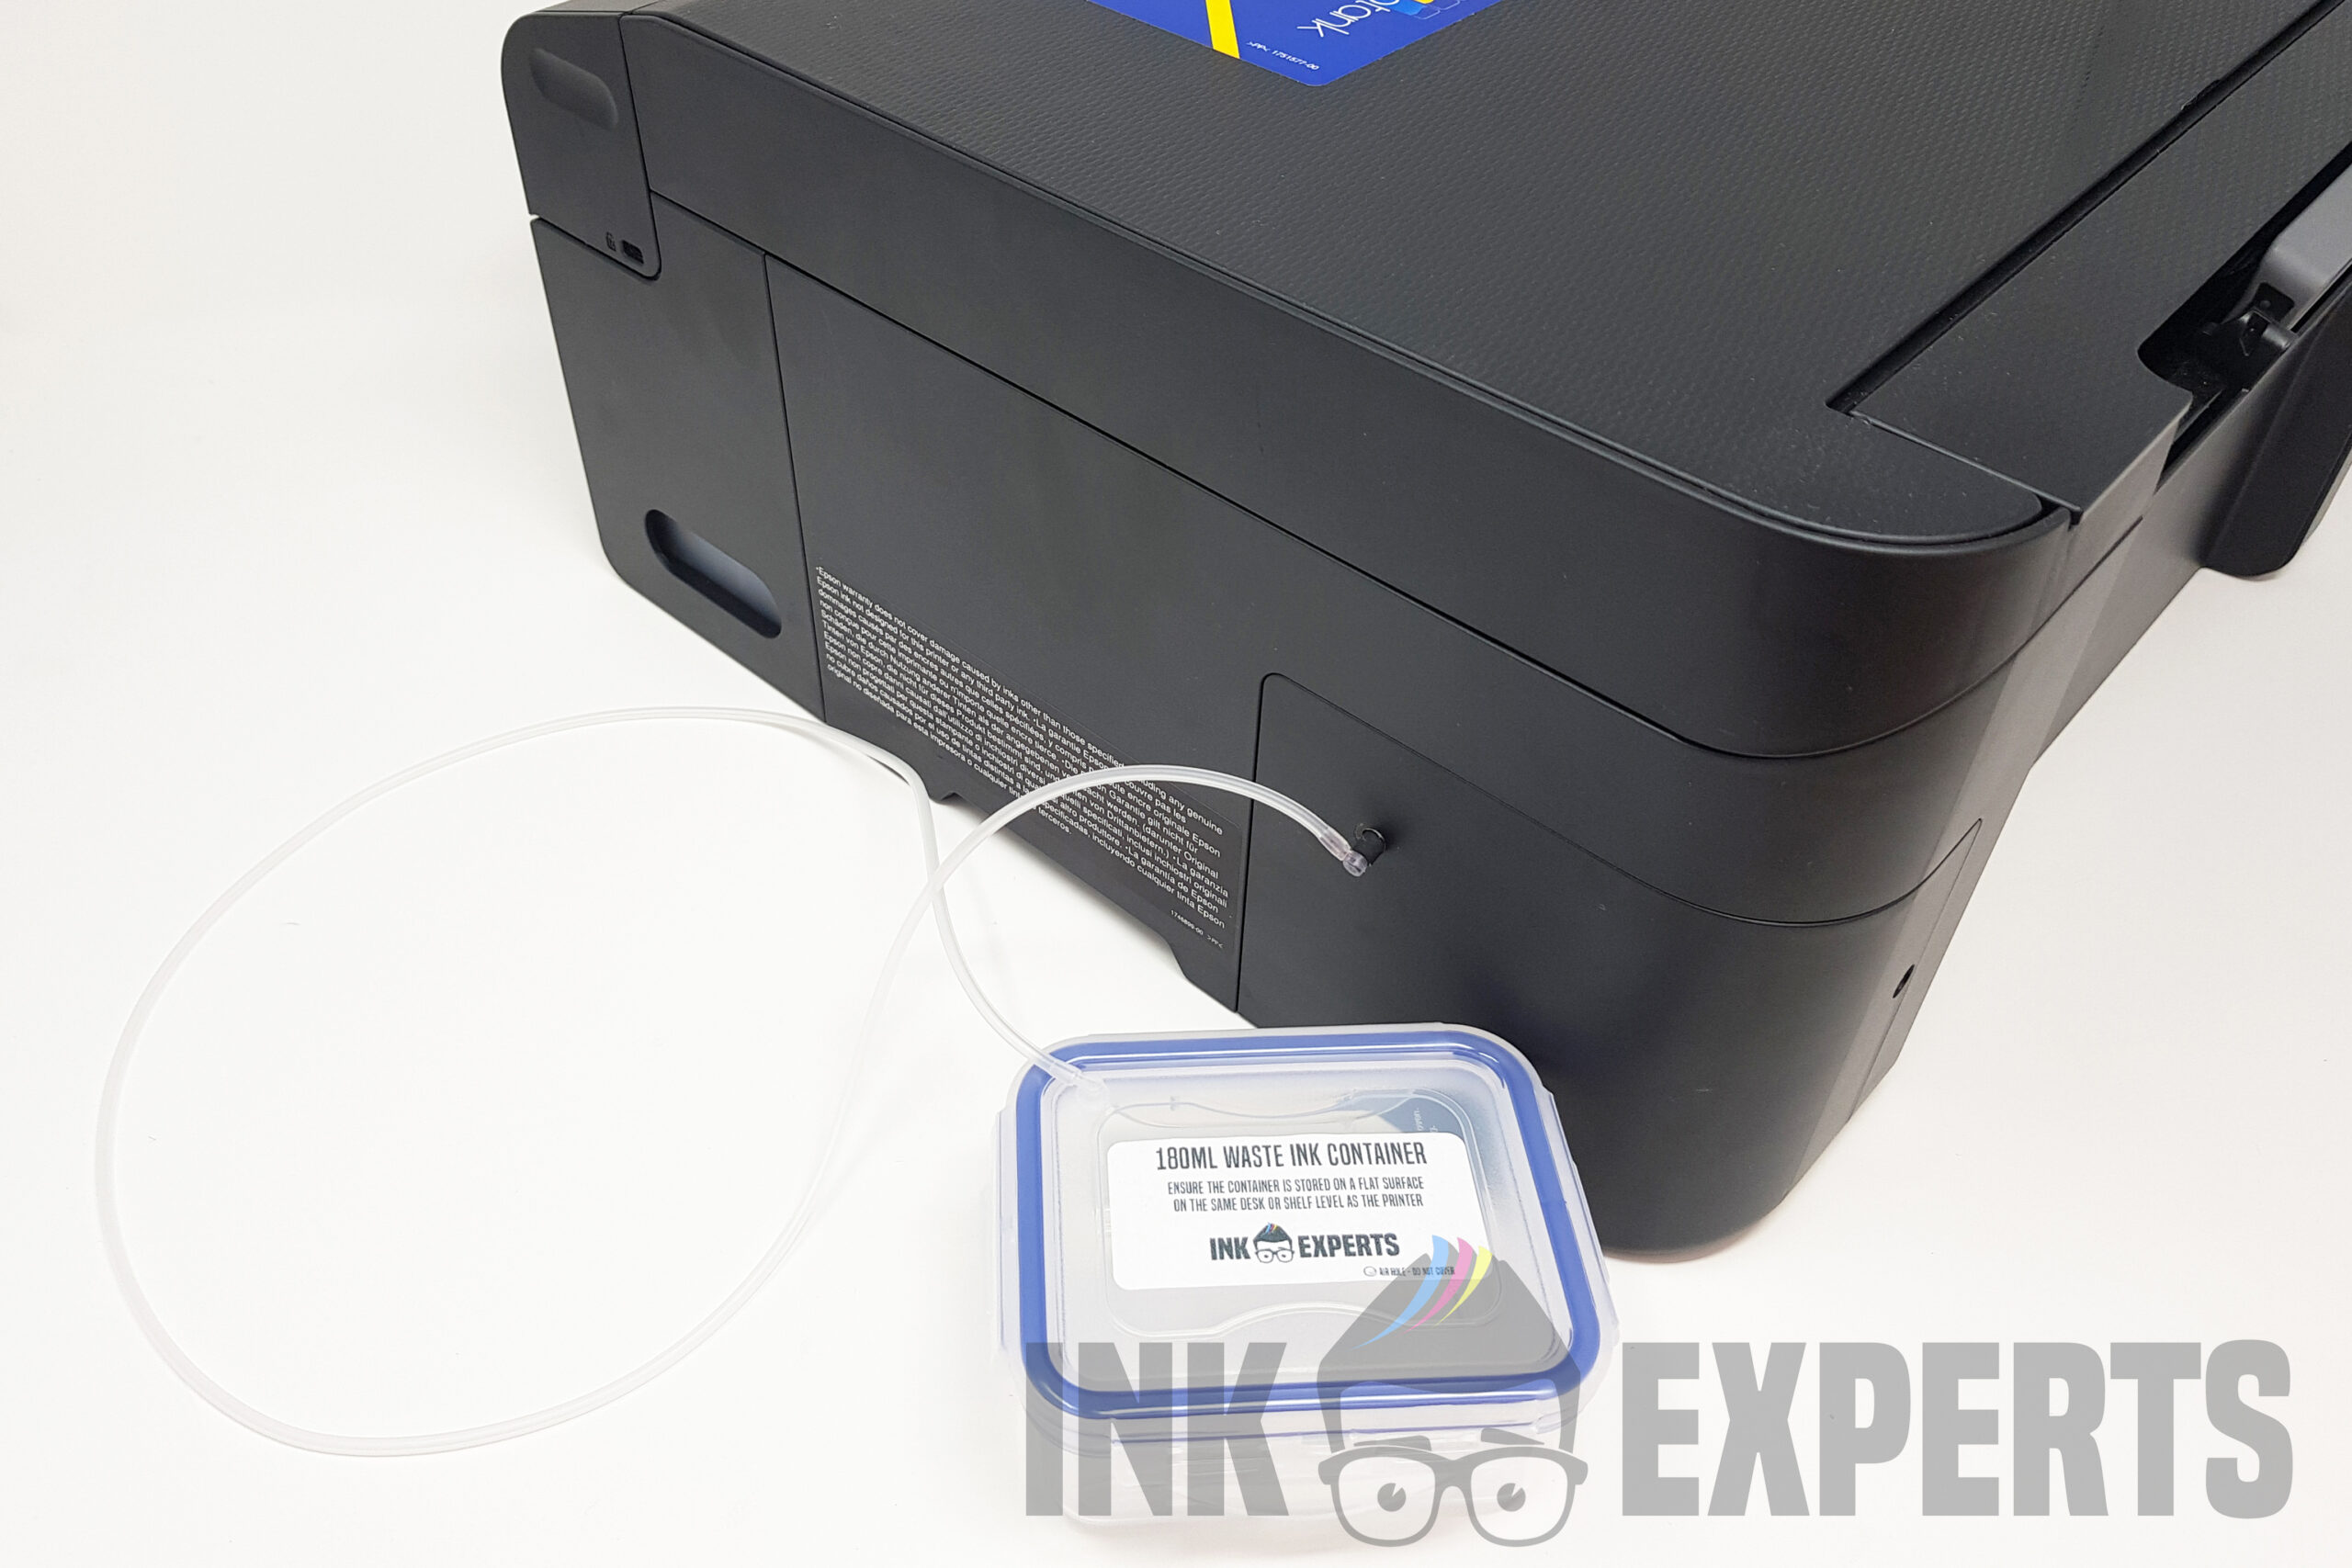 Epson EcoTank ET-2810 Waste Ink Counter reset —